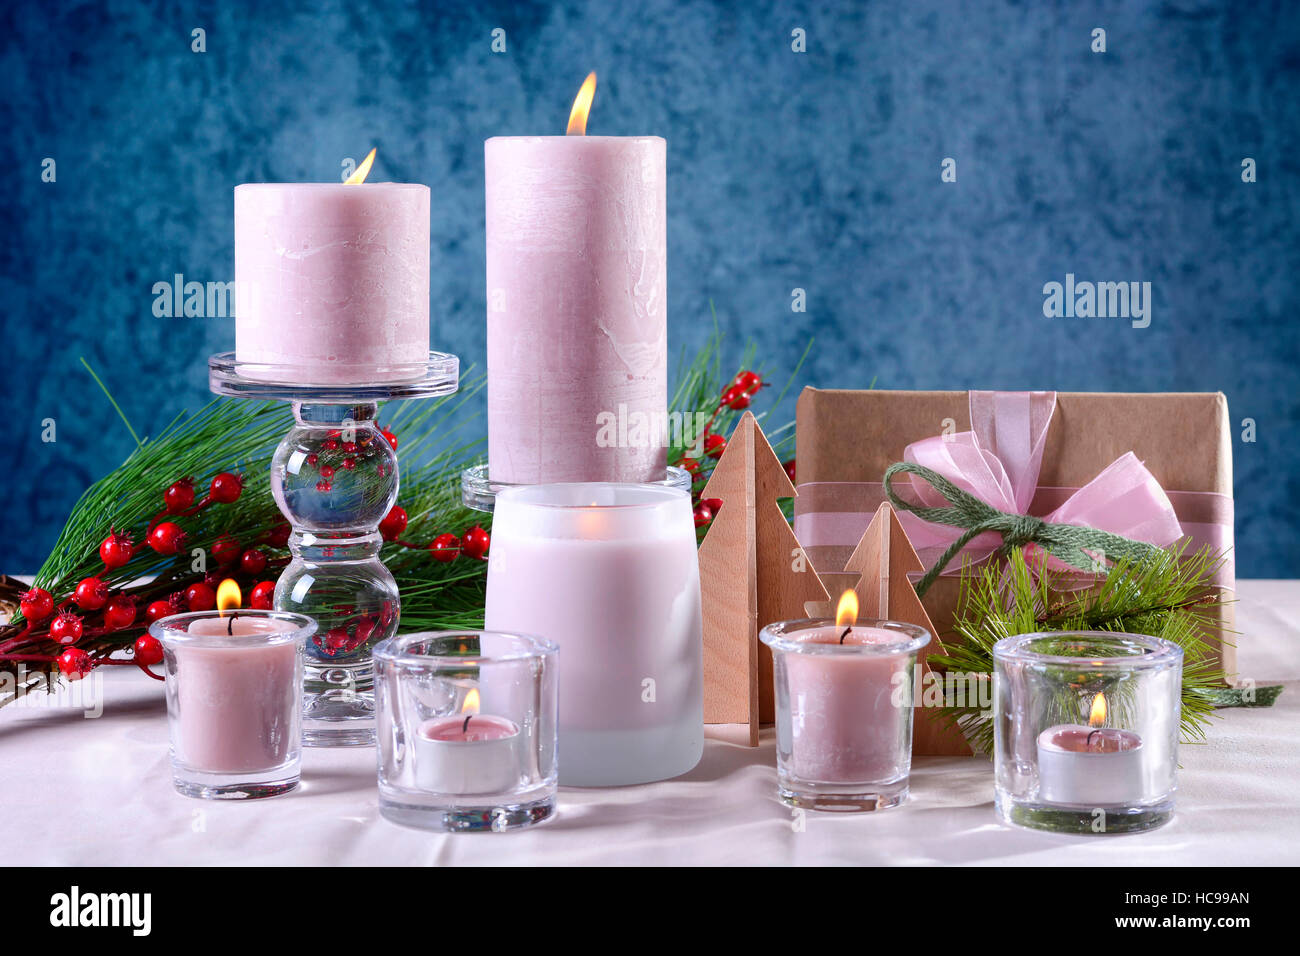 Festive glamour natale vacanze messa in tavola con candele rosa, dono contro uno sfondo blu. Foto Stock